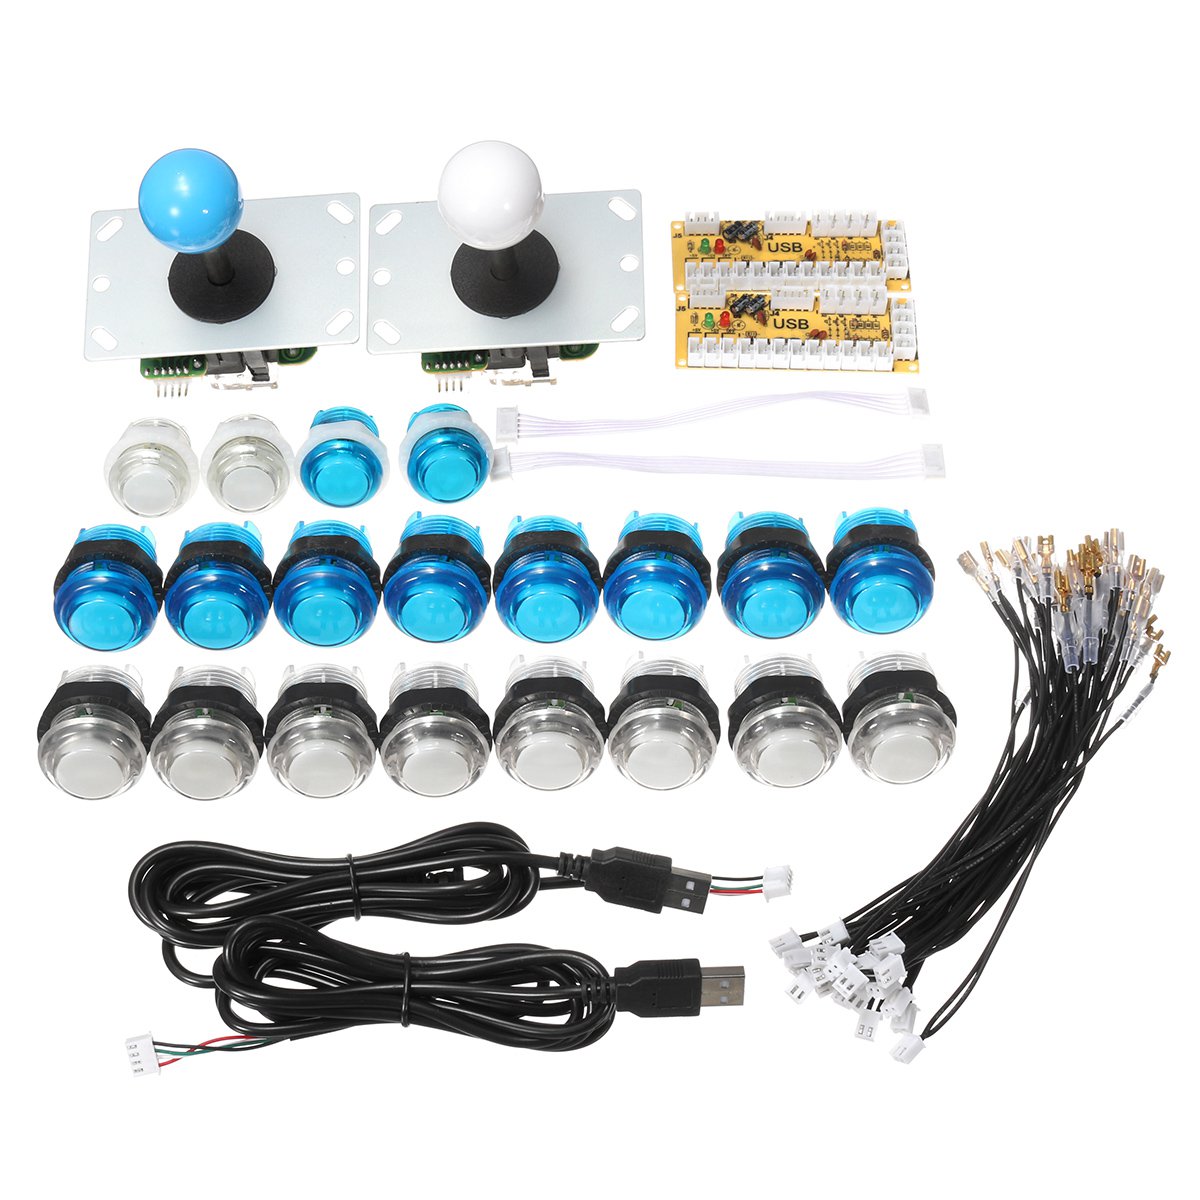 Zero Ritardo Joystick Arcade Kit FAI DA TE LED Premere il Pulsante + Joystick + USB Encoder + Cablaggio + USB Controller Per arcade Mame Arcade Gioco